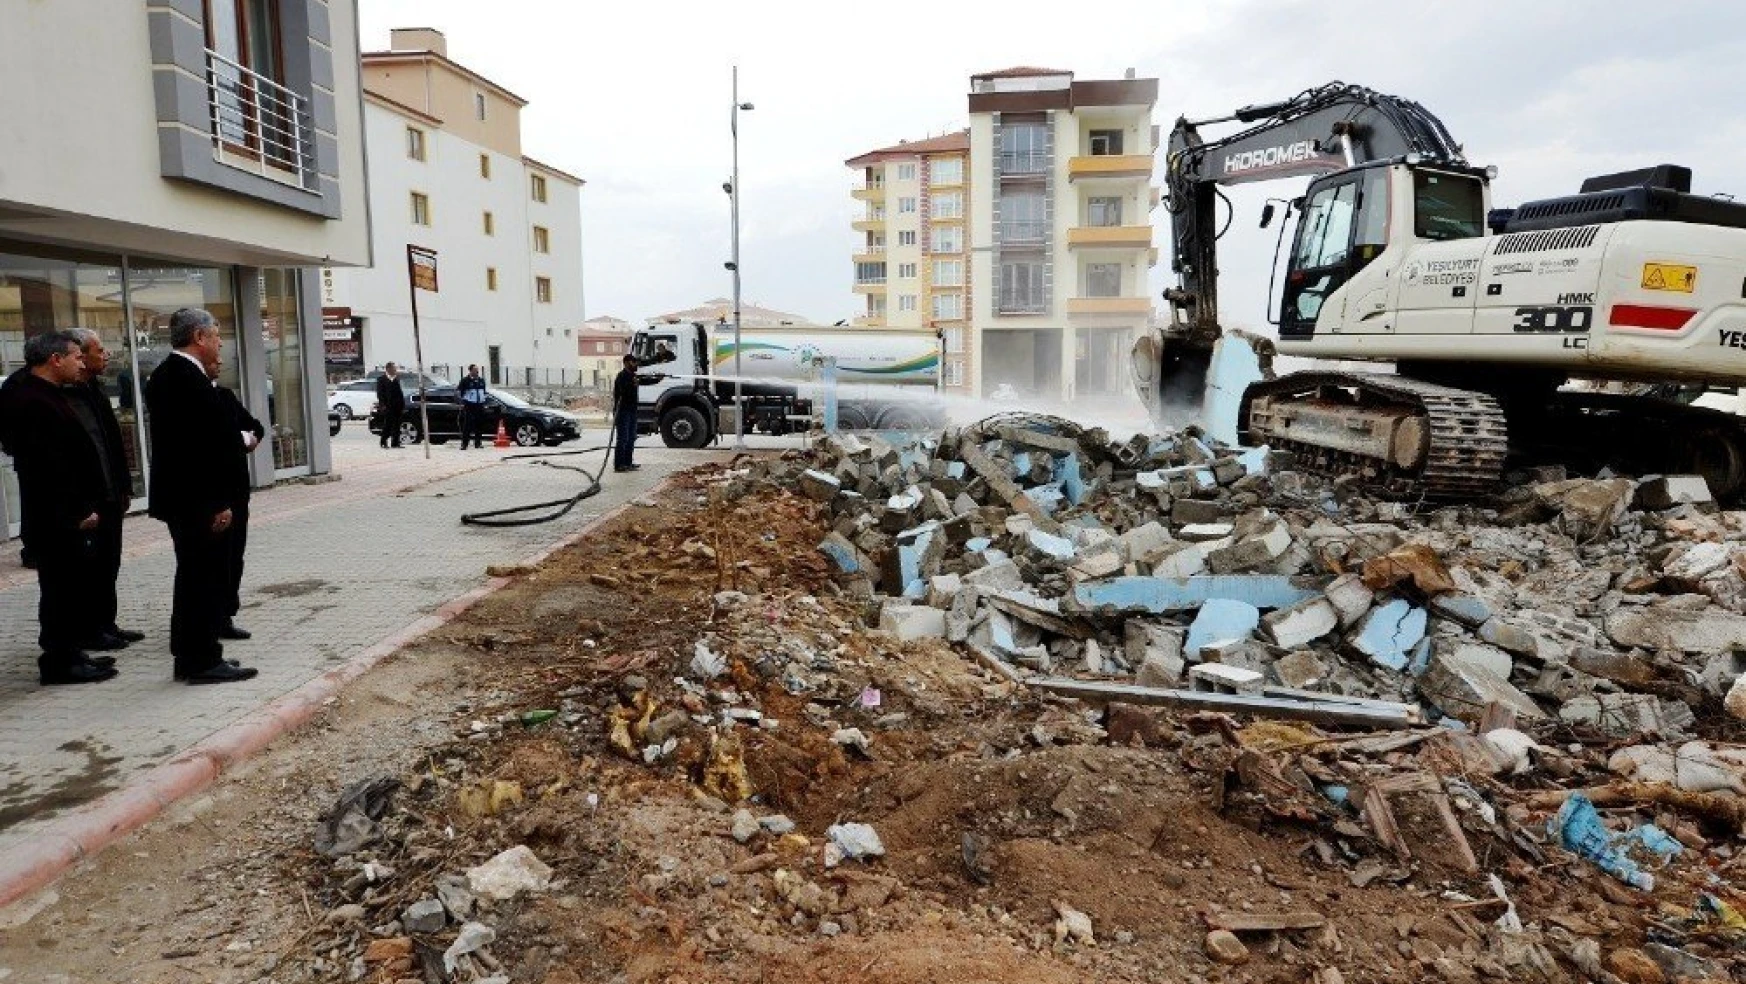 Yeşilyurt Belediyesi, üç yılda 136 metruk bina yıkımını gerçekleştirdi
